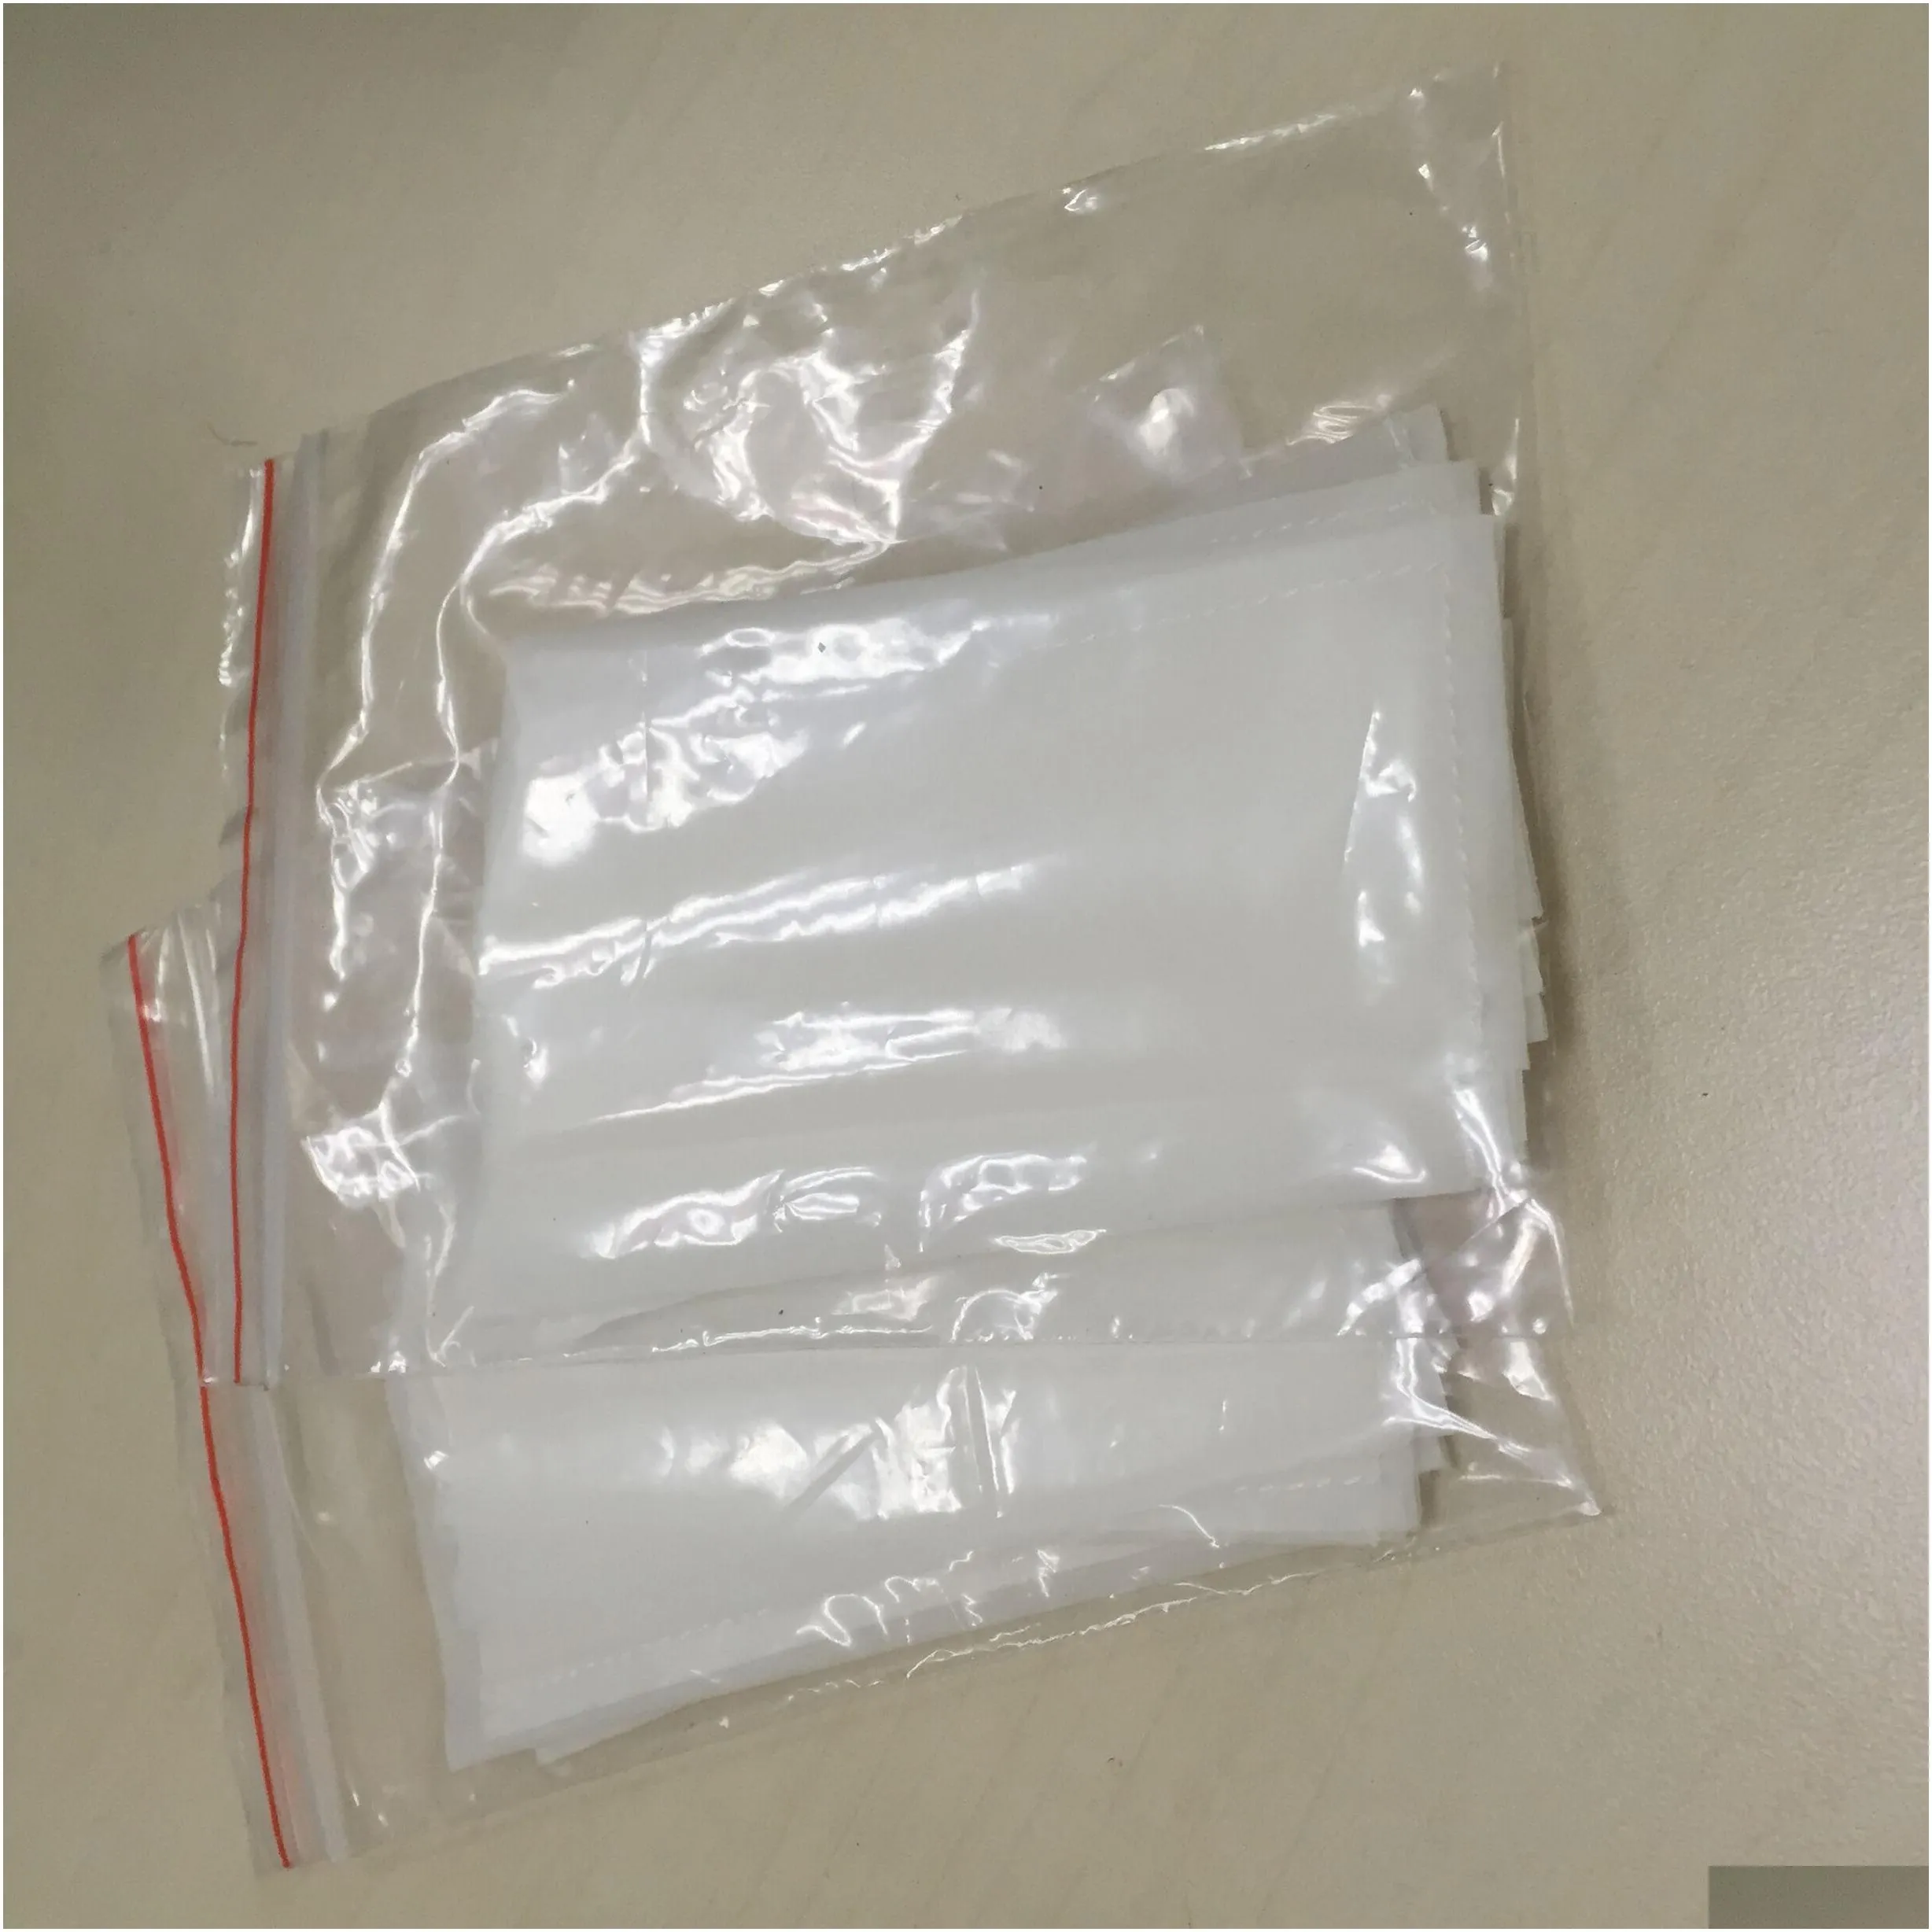 good price rosin press bags 3 x 5 160 micron rosin bags 160 micron